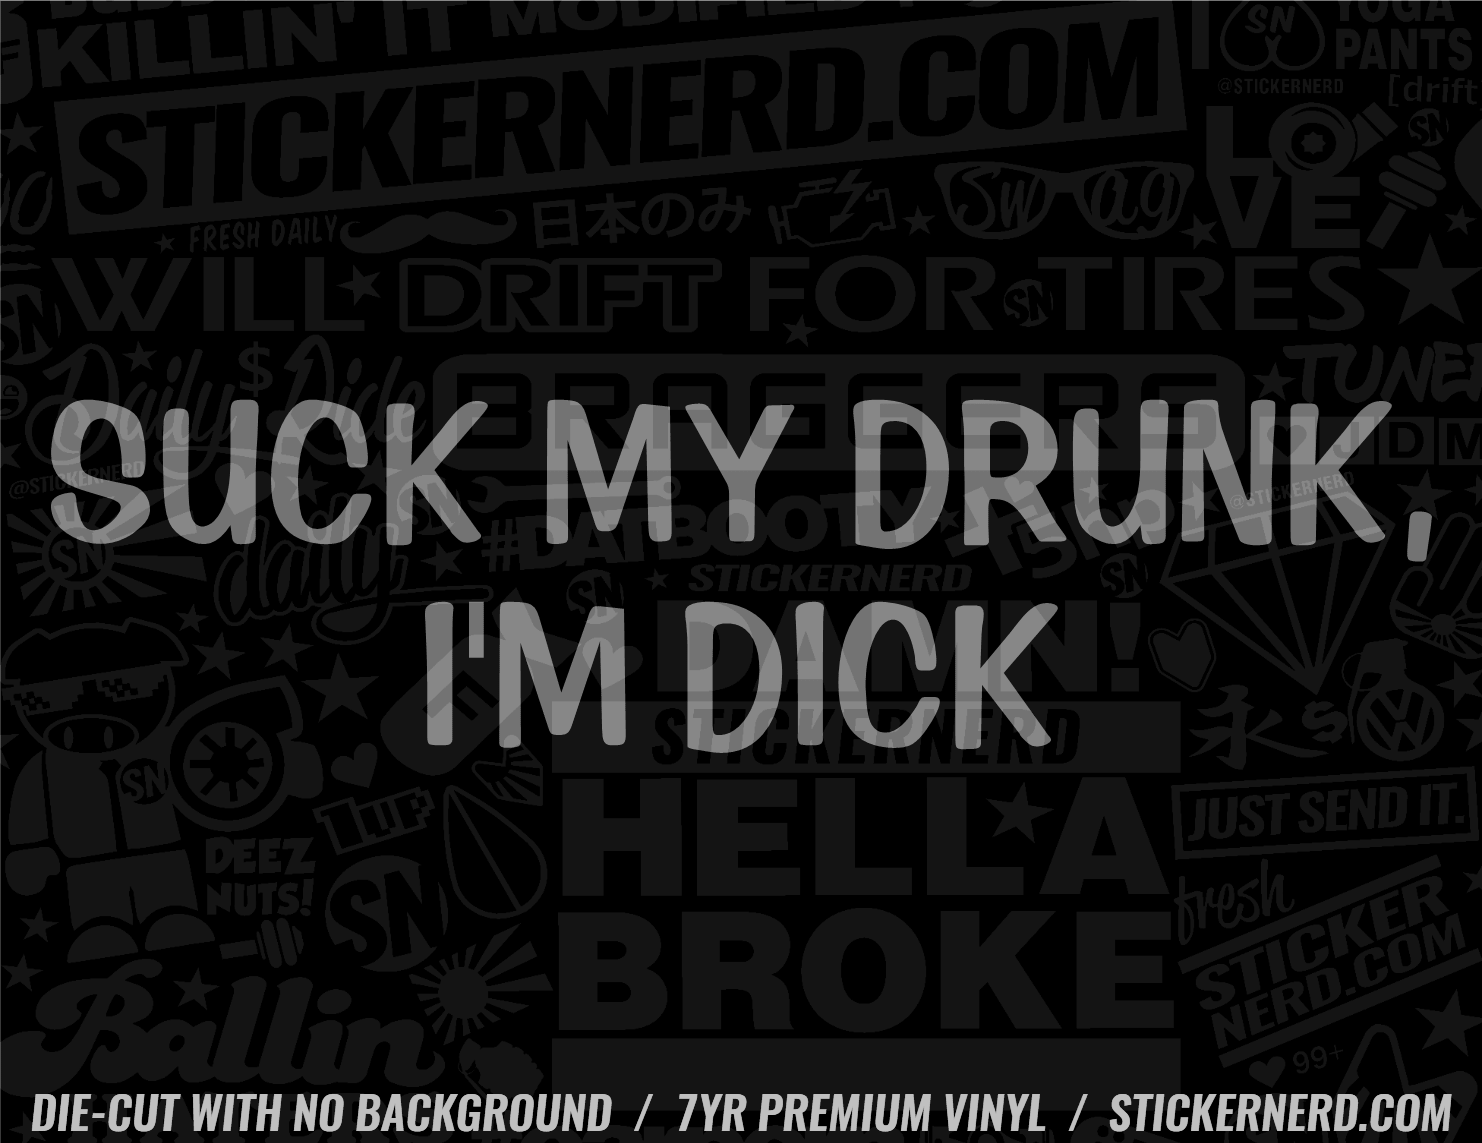 Suck My Drunk I'm Dick Sticker - Window Decal - STICKERNERD.COM